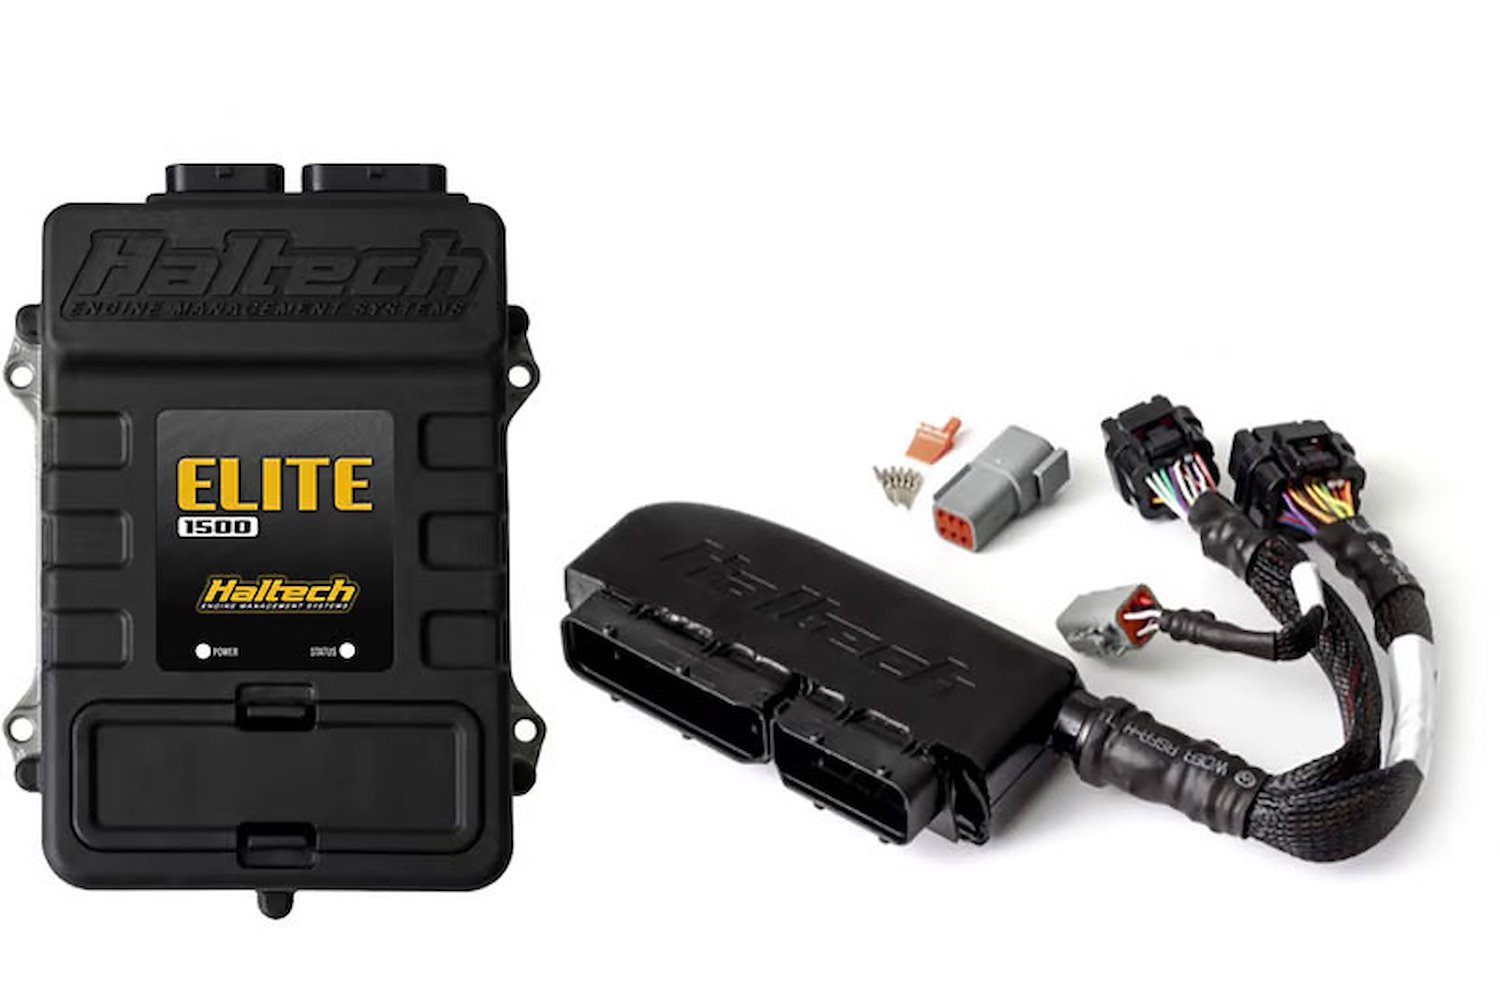 HT-150970 Elite 1500 Plug Plug-and-Play Adaptor Harness ECU Kit, VW/Audi 1.8T AWP